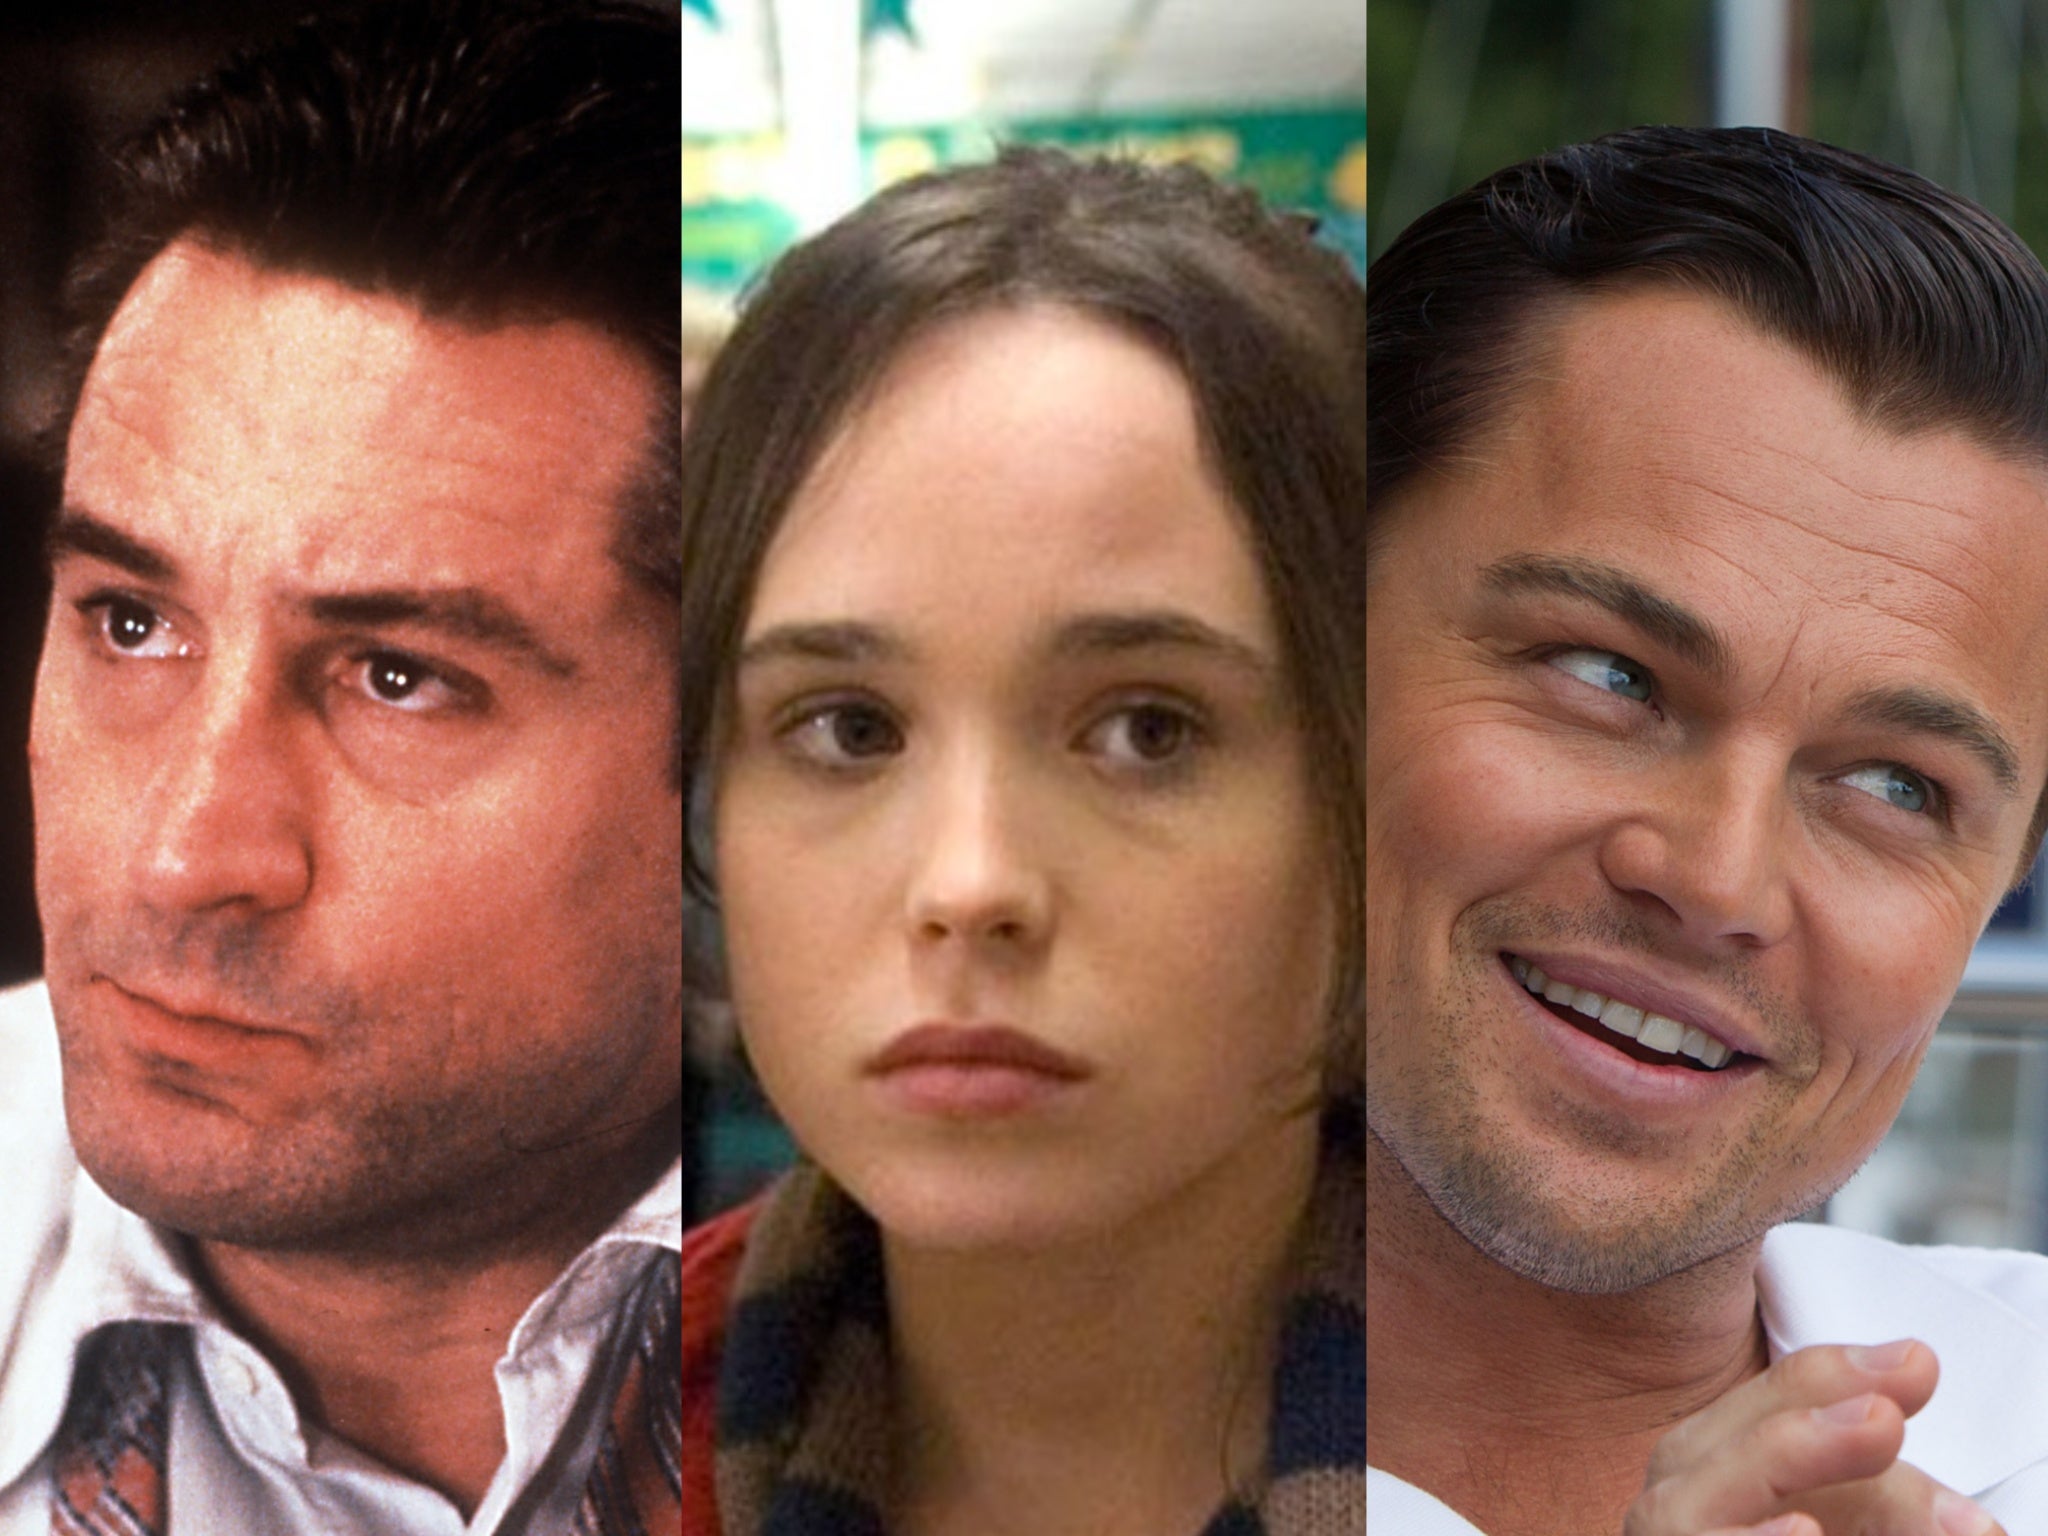 Robert De Niro en ‘Goodfellas’, Elliot Page en ‘Juno’, y Leonardo DiCaprio en ‘Wolf of Wall Street’